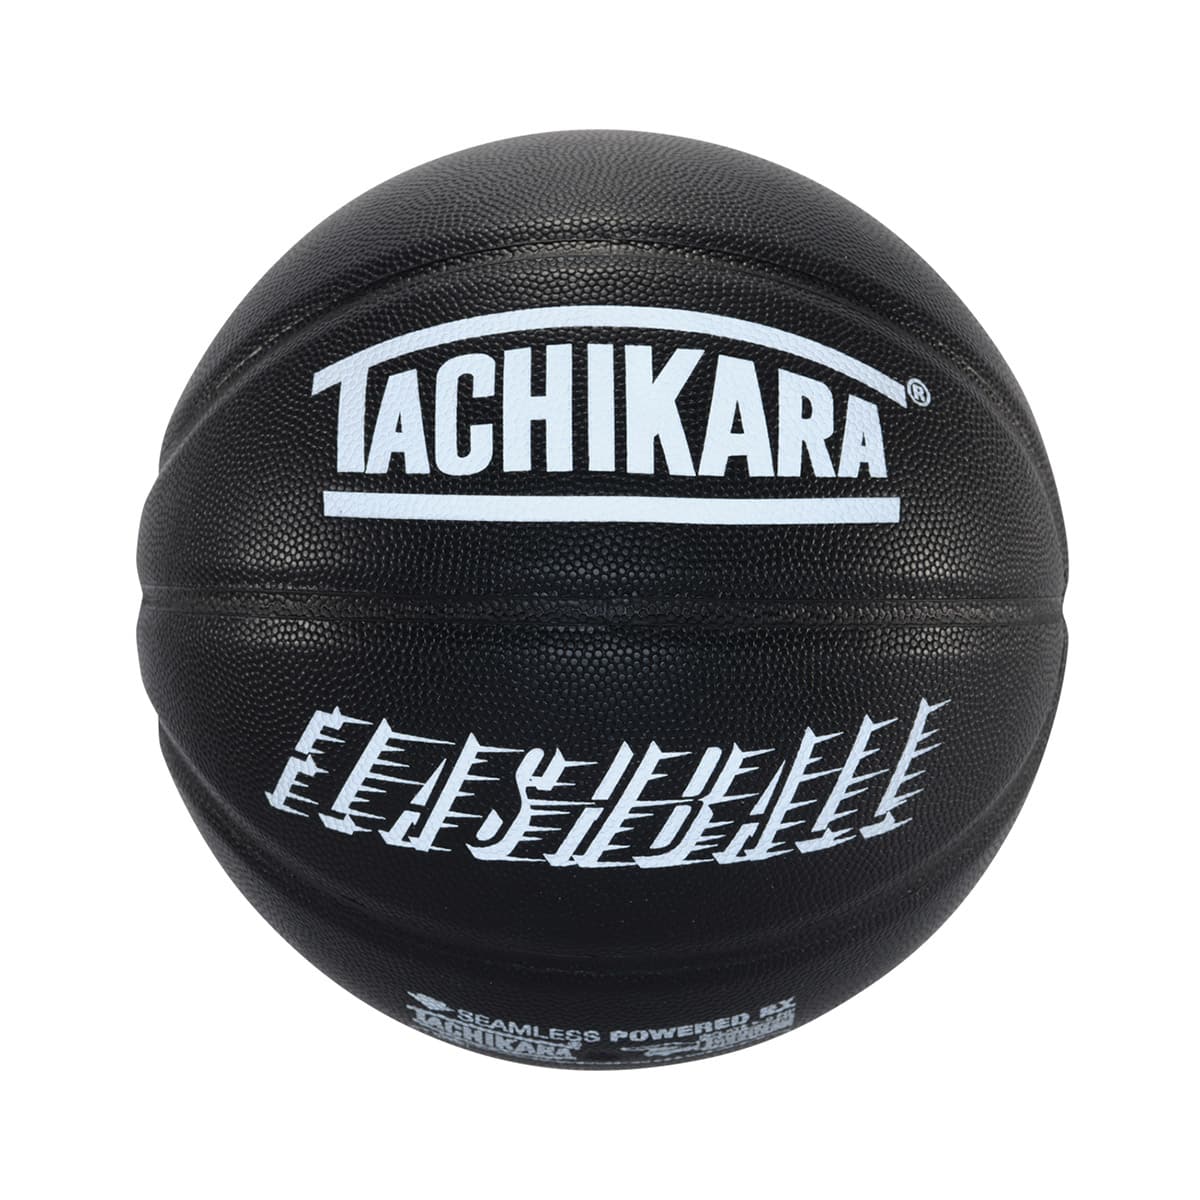 TACHIKARA FLASHBALL -REFLECTIVE- BLACK/REFLECTOR 22HO-I